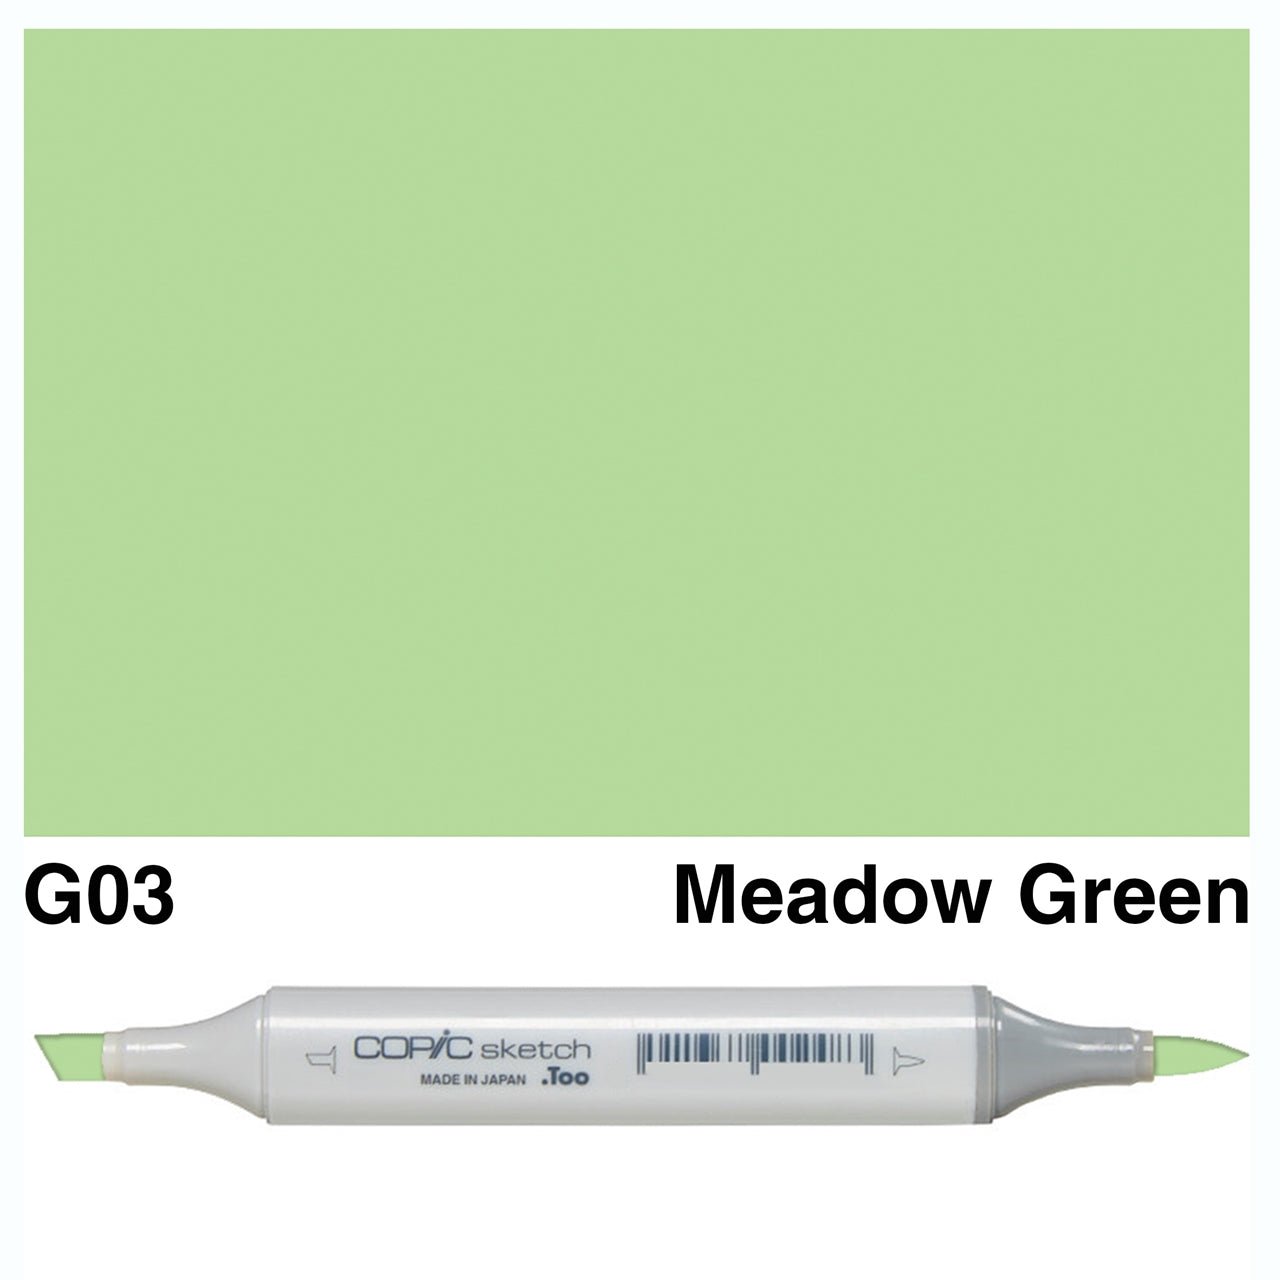 Copic Sketch G03 Meadow Green - theartshop.com.au